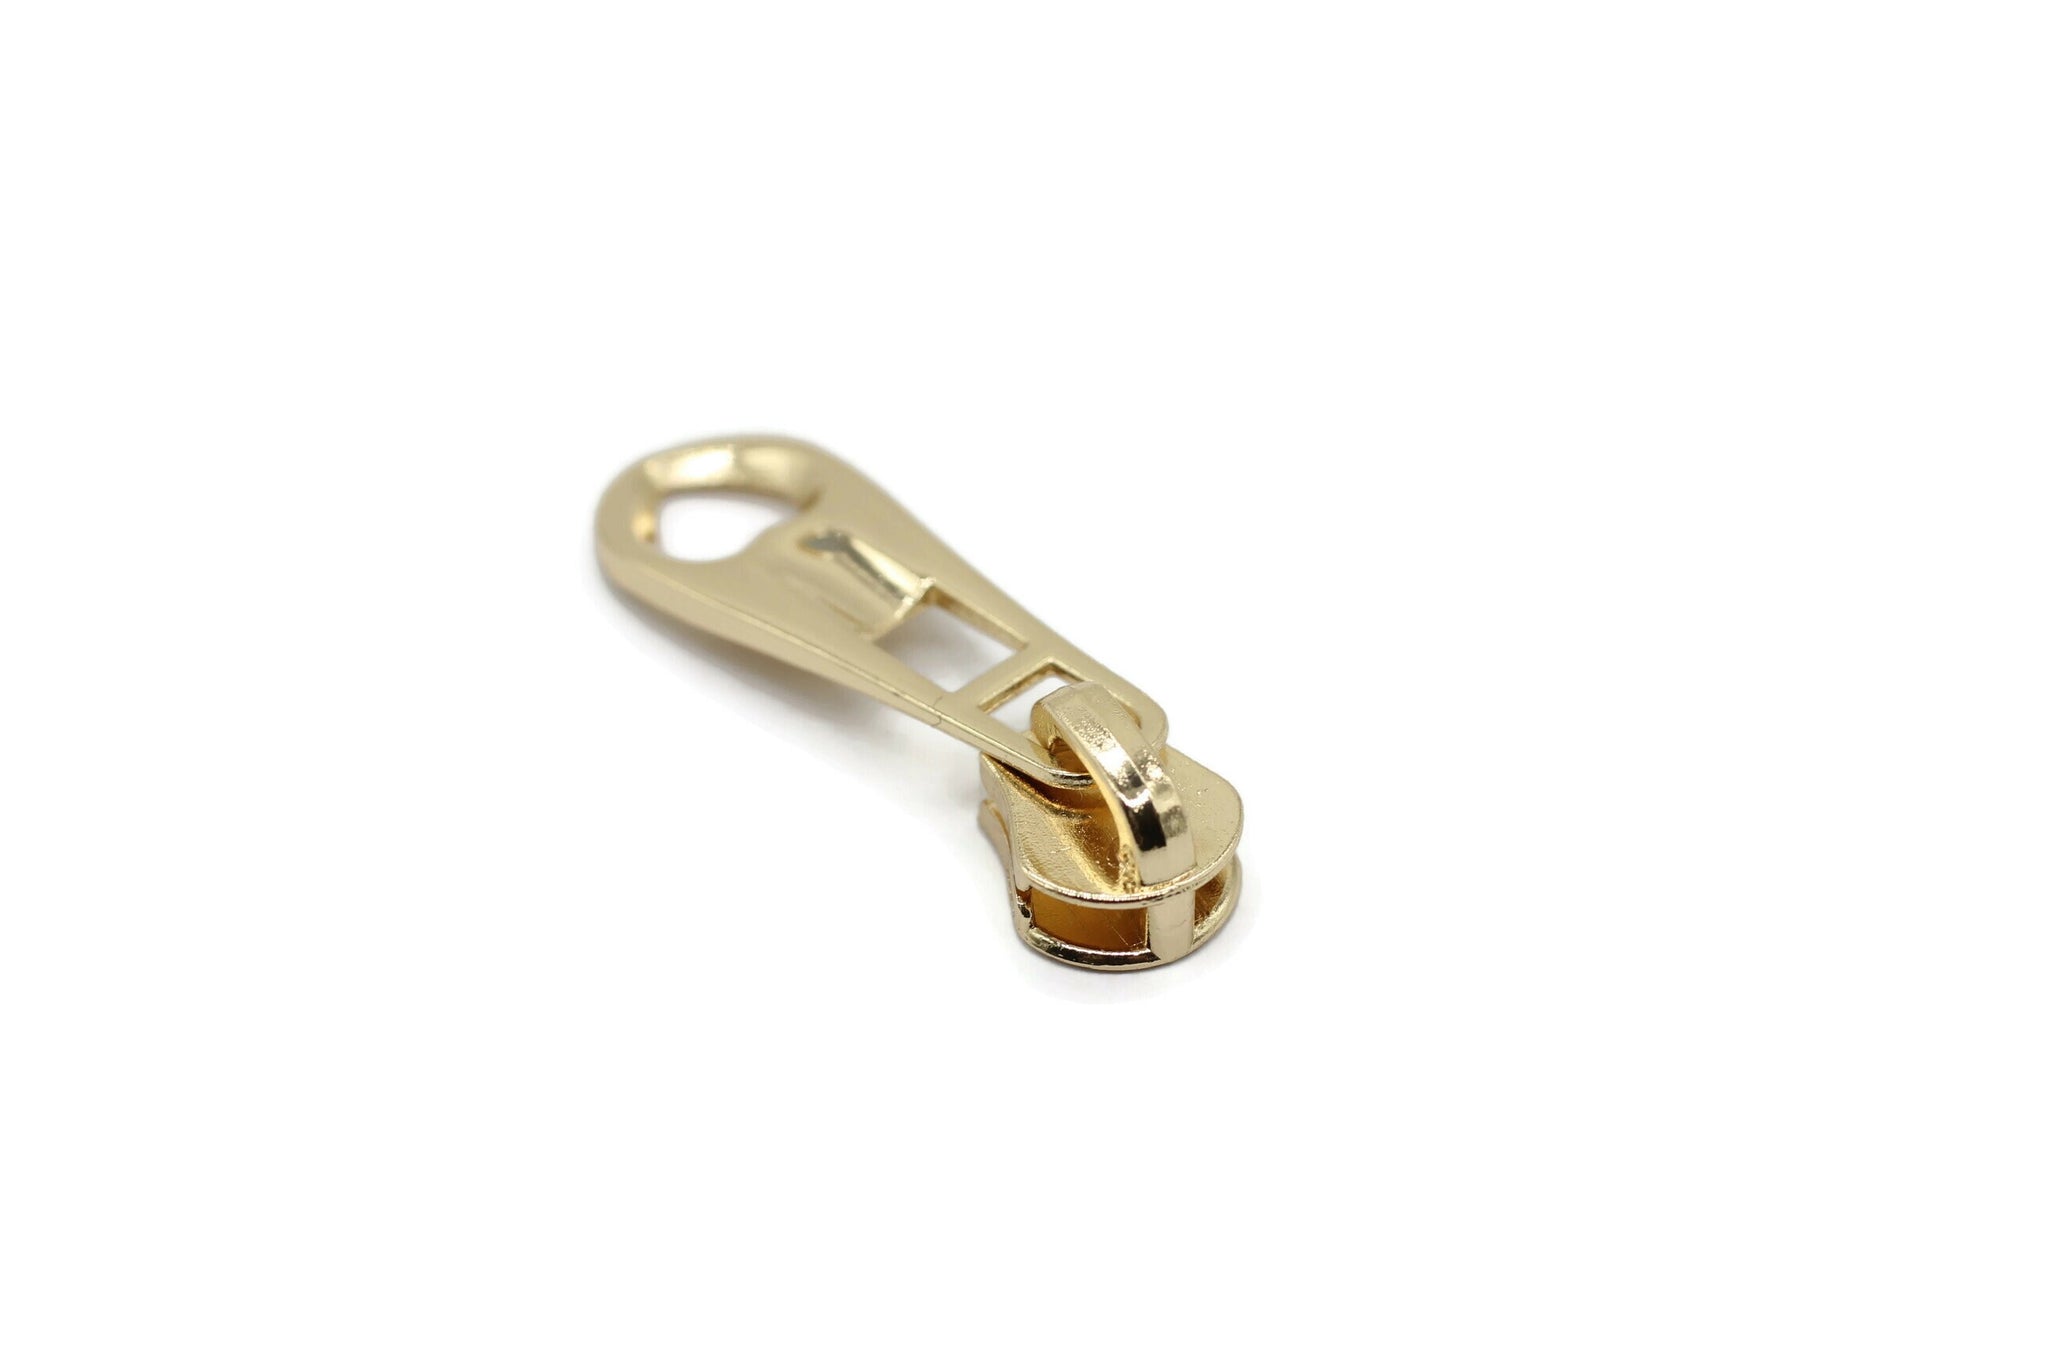 Gold Tone Zipper Pull, 41 mm(1.6 inches) #5 Metal Zipper Pulls, Zipper Sliders, Zipper Tab, Zipper Part, Zipper Head, Bag Zipper Pulls